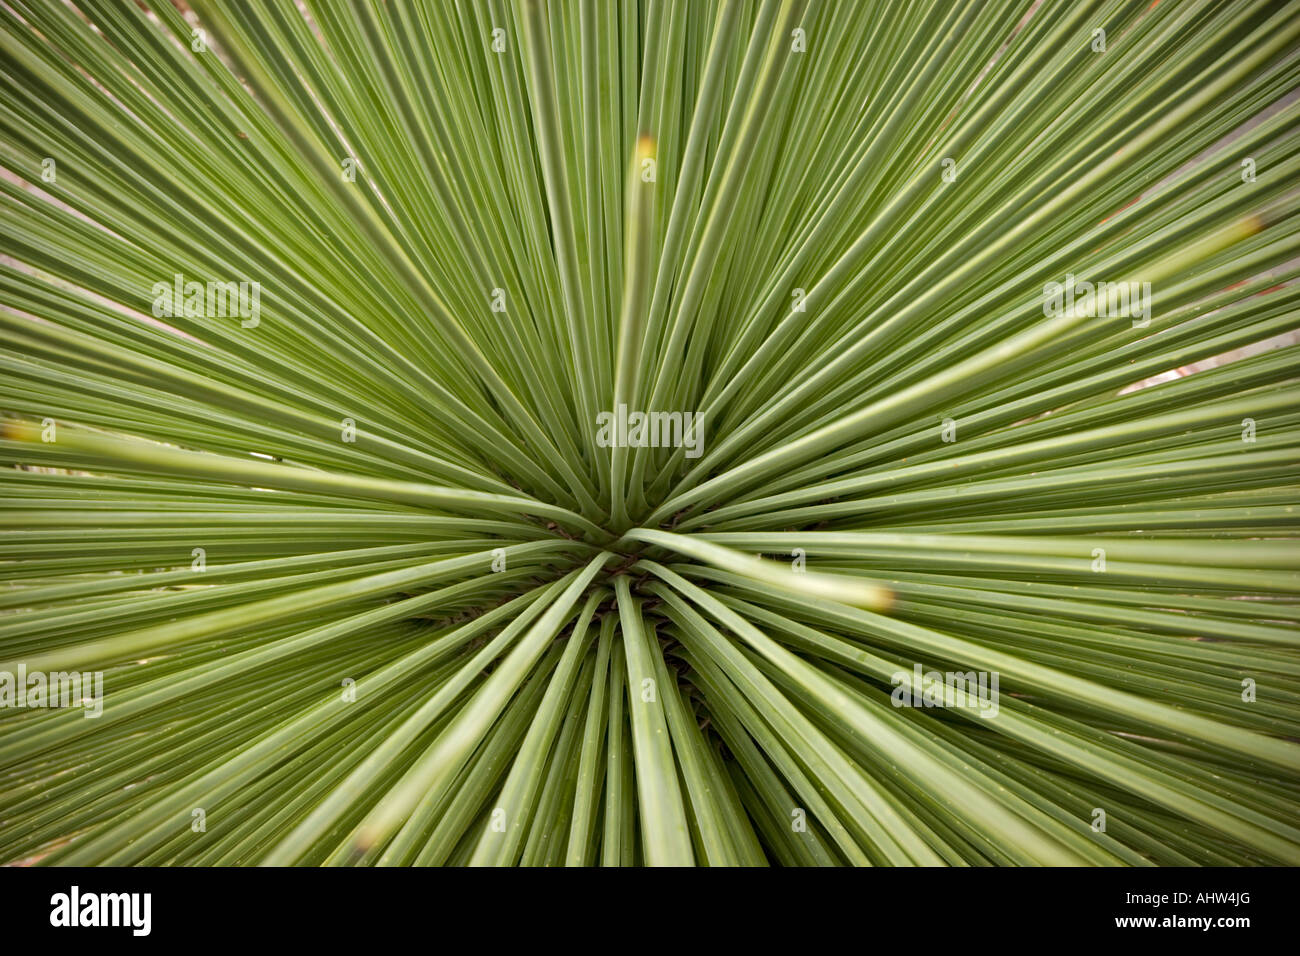 Alta angolazione di un becco Yucca core (Messico). Vue en plongée du Coeur d'onu Yucca rostrata (Mexique). Foto Stock